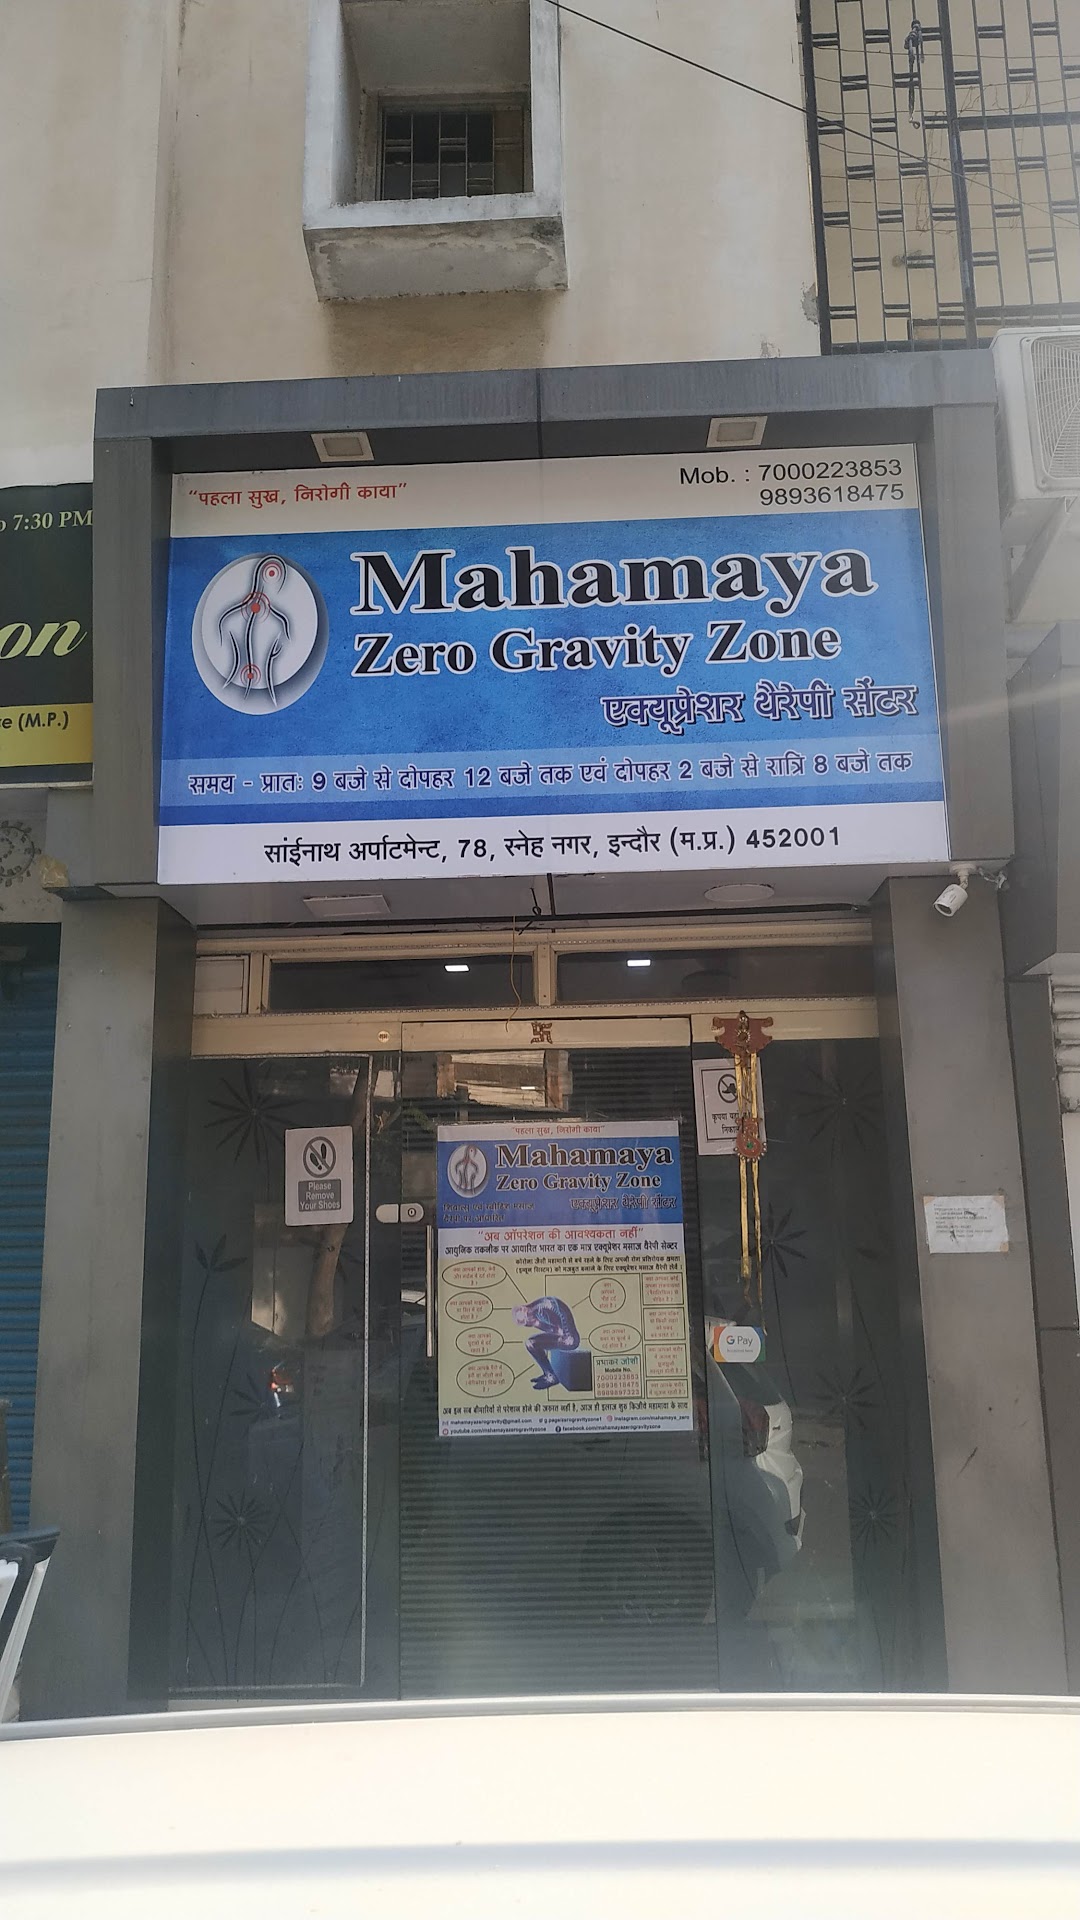 Mahamaya Zero Gravity Zone: The acupressure Massage Therapy Center